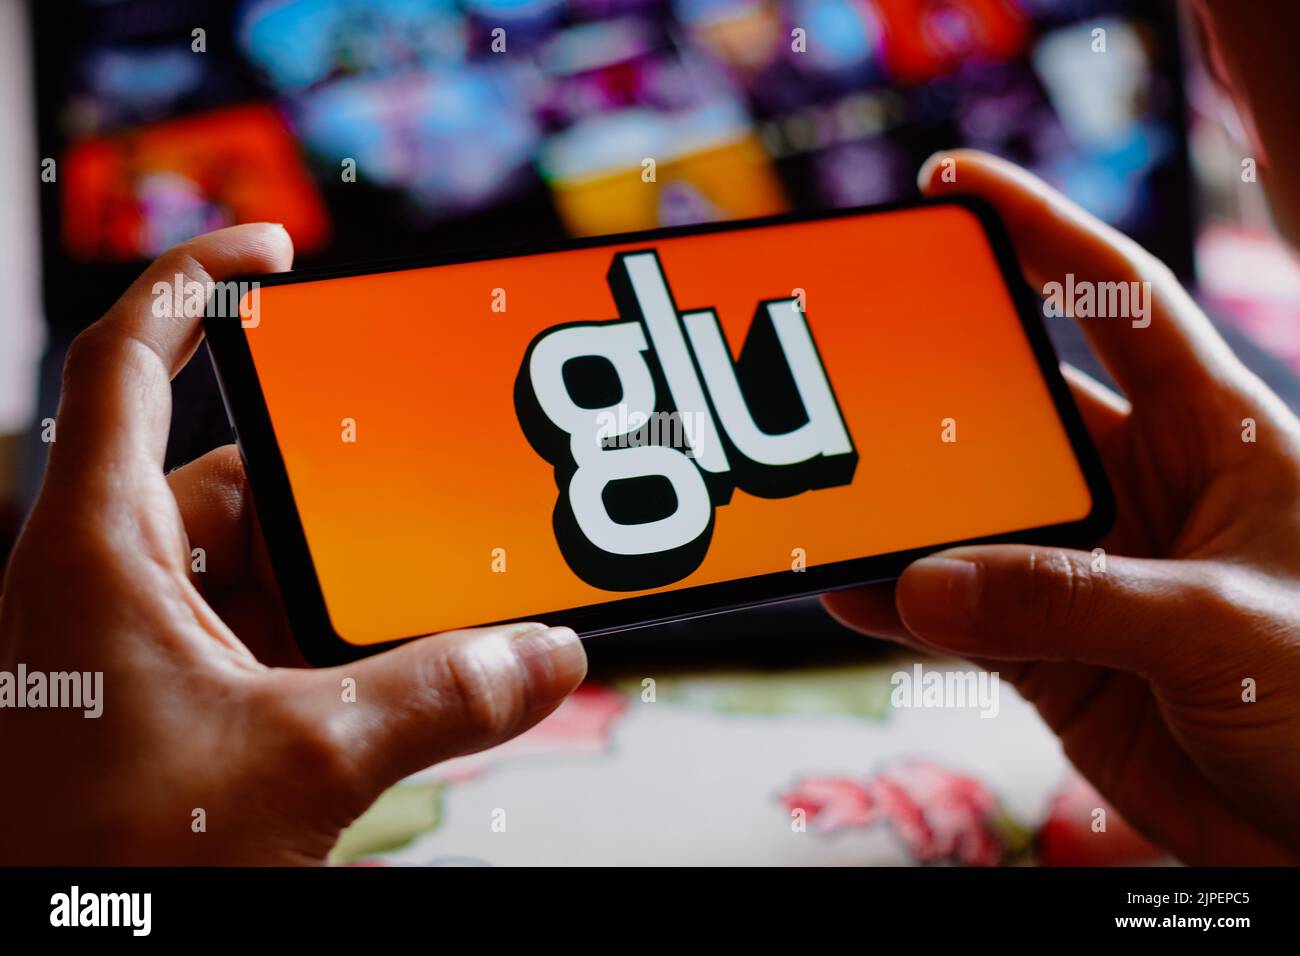 En esta ilustración fotográfica, el logotipo de Glu Mobile se muestra en la pantalla de un smartphone. Foto de stock